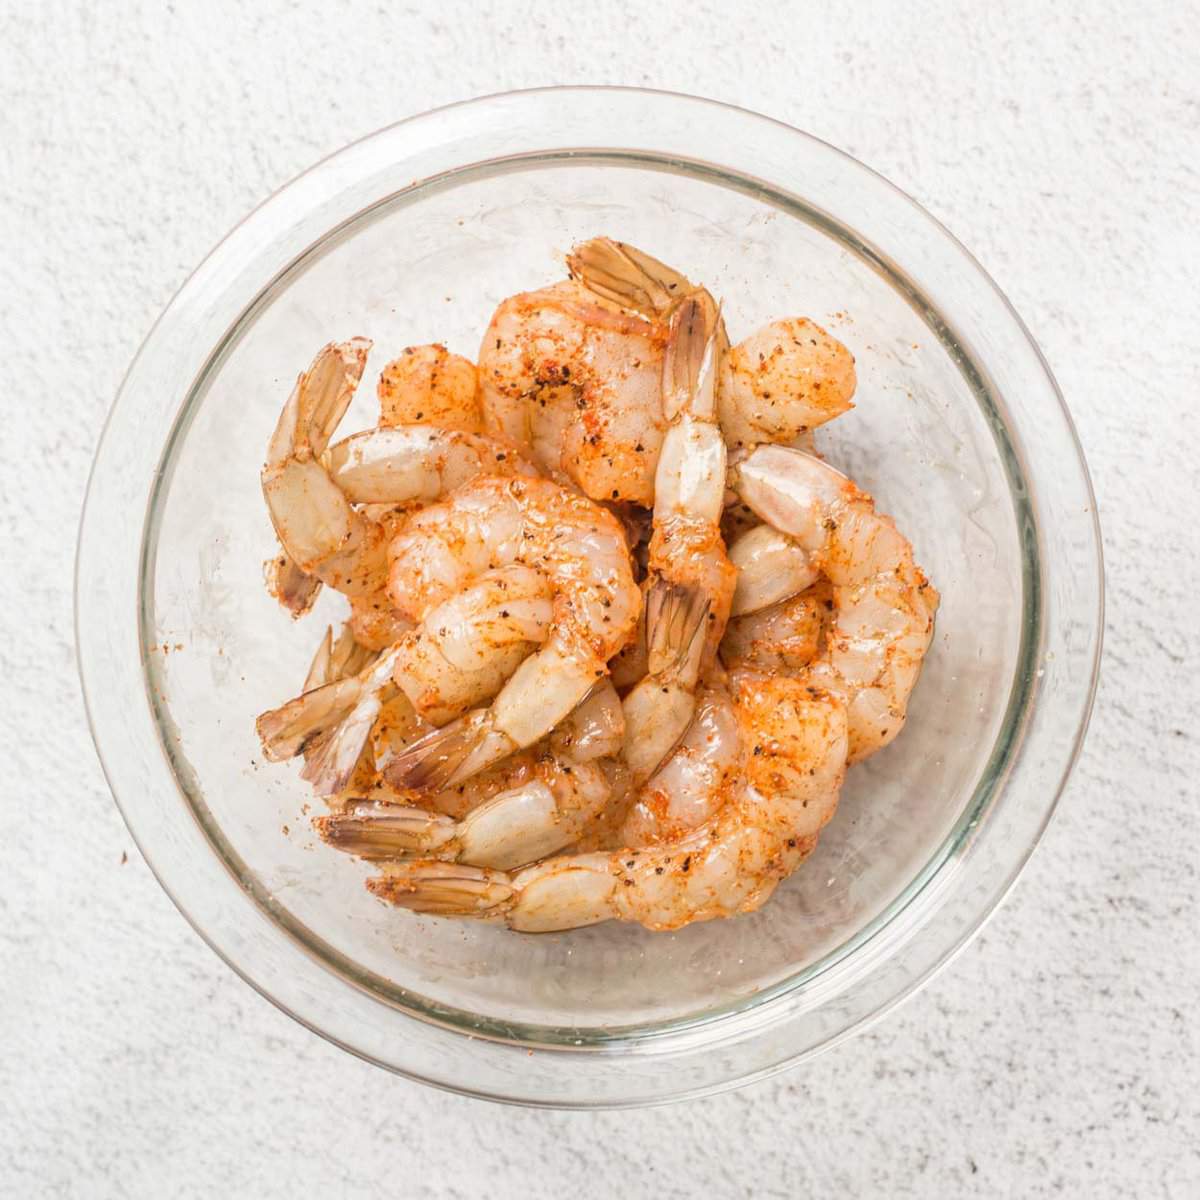 Seasoned shrimp in a glass bowl.